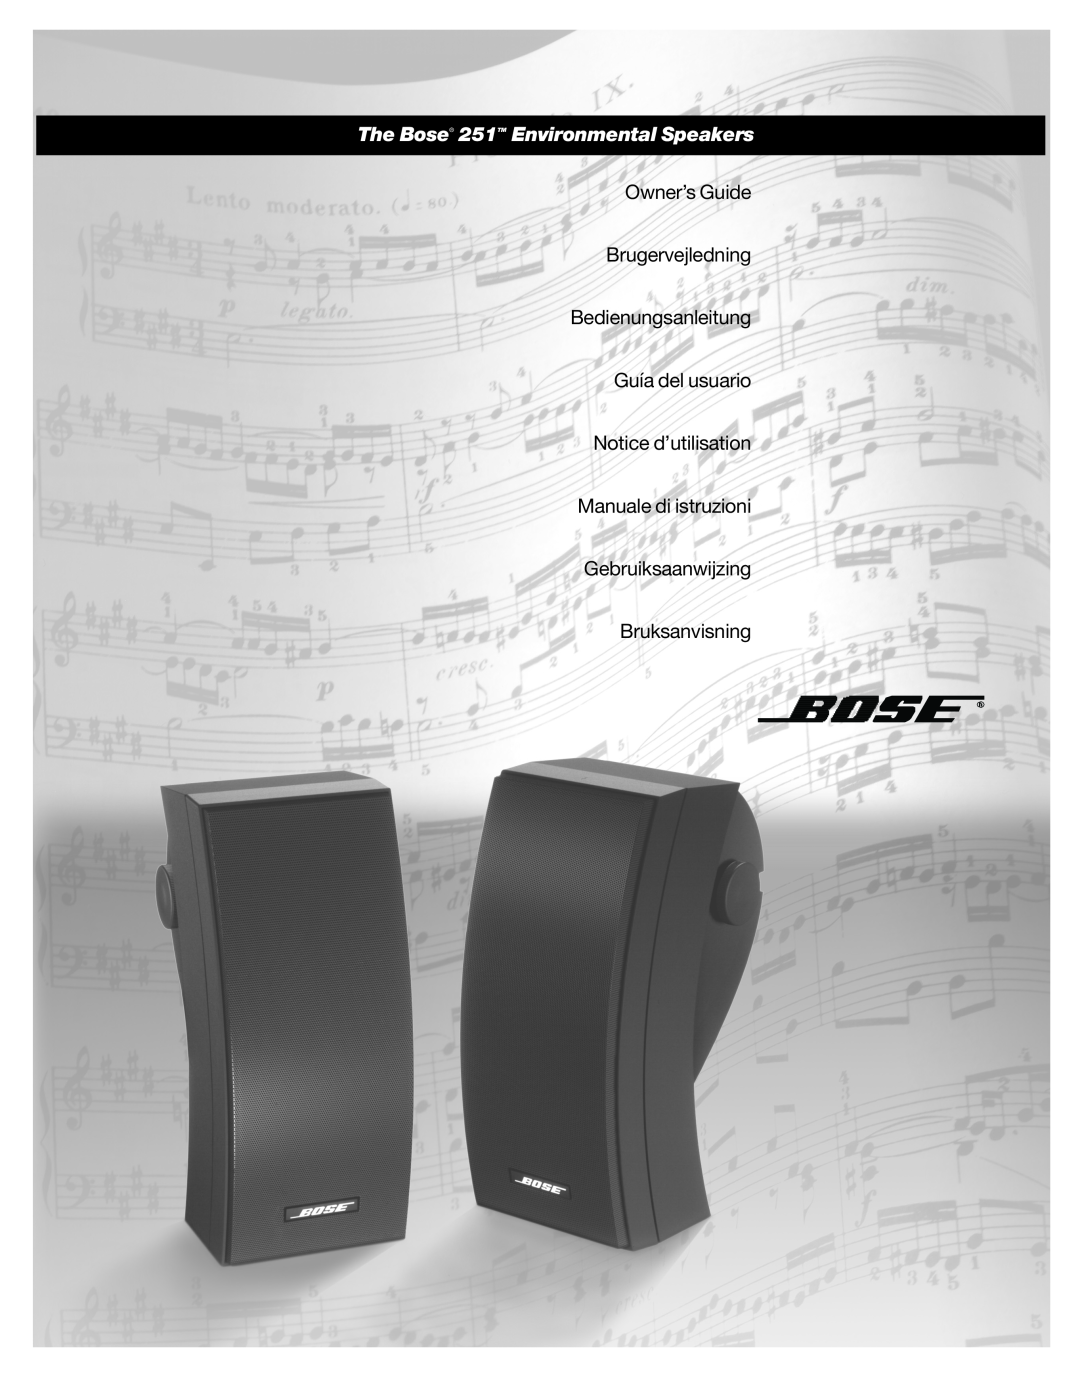 Bose manual The Bose 251TM Environmental Speakers, Owner’s Guide Brugervejledning, Bedienungsanleitung Guía del usuario 